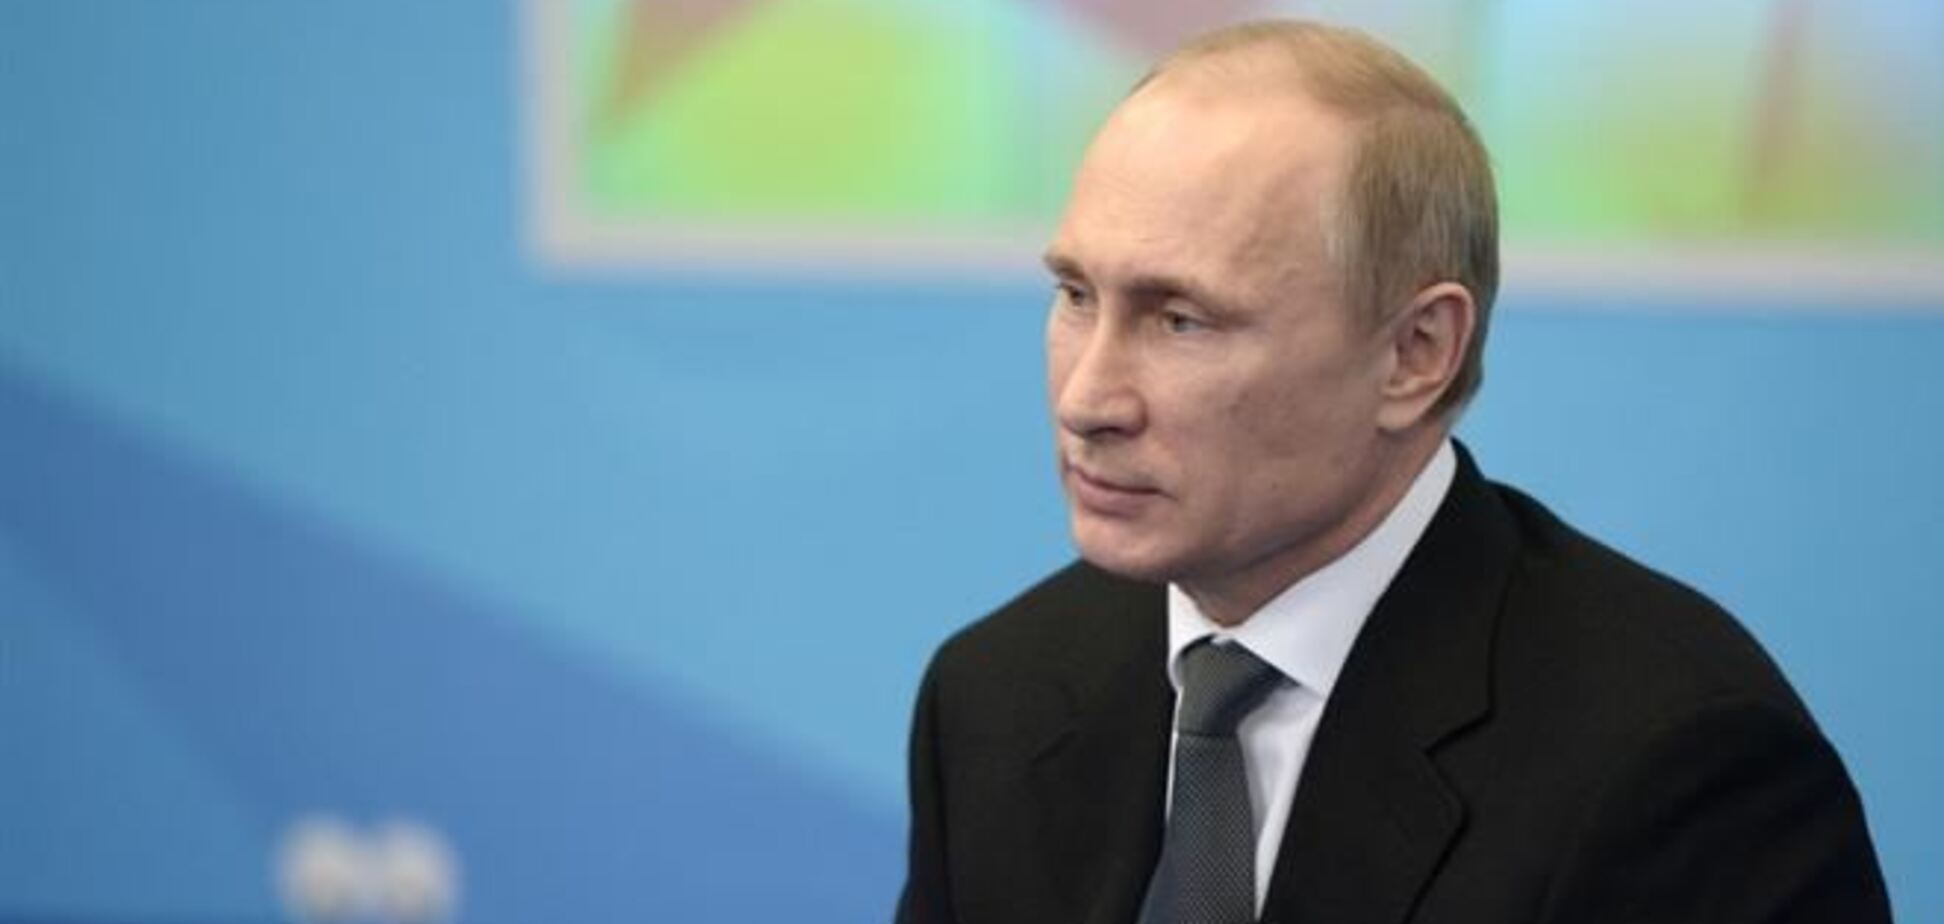 Путин надеется, что зарубежные СМИ перестанут связывать политику и спорт  